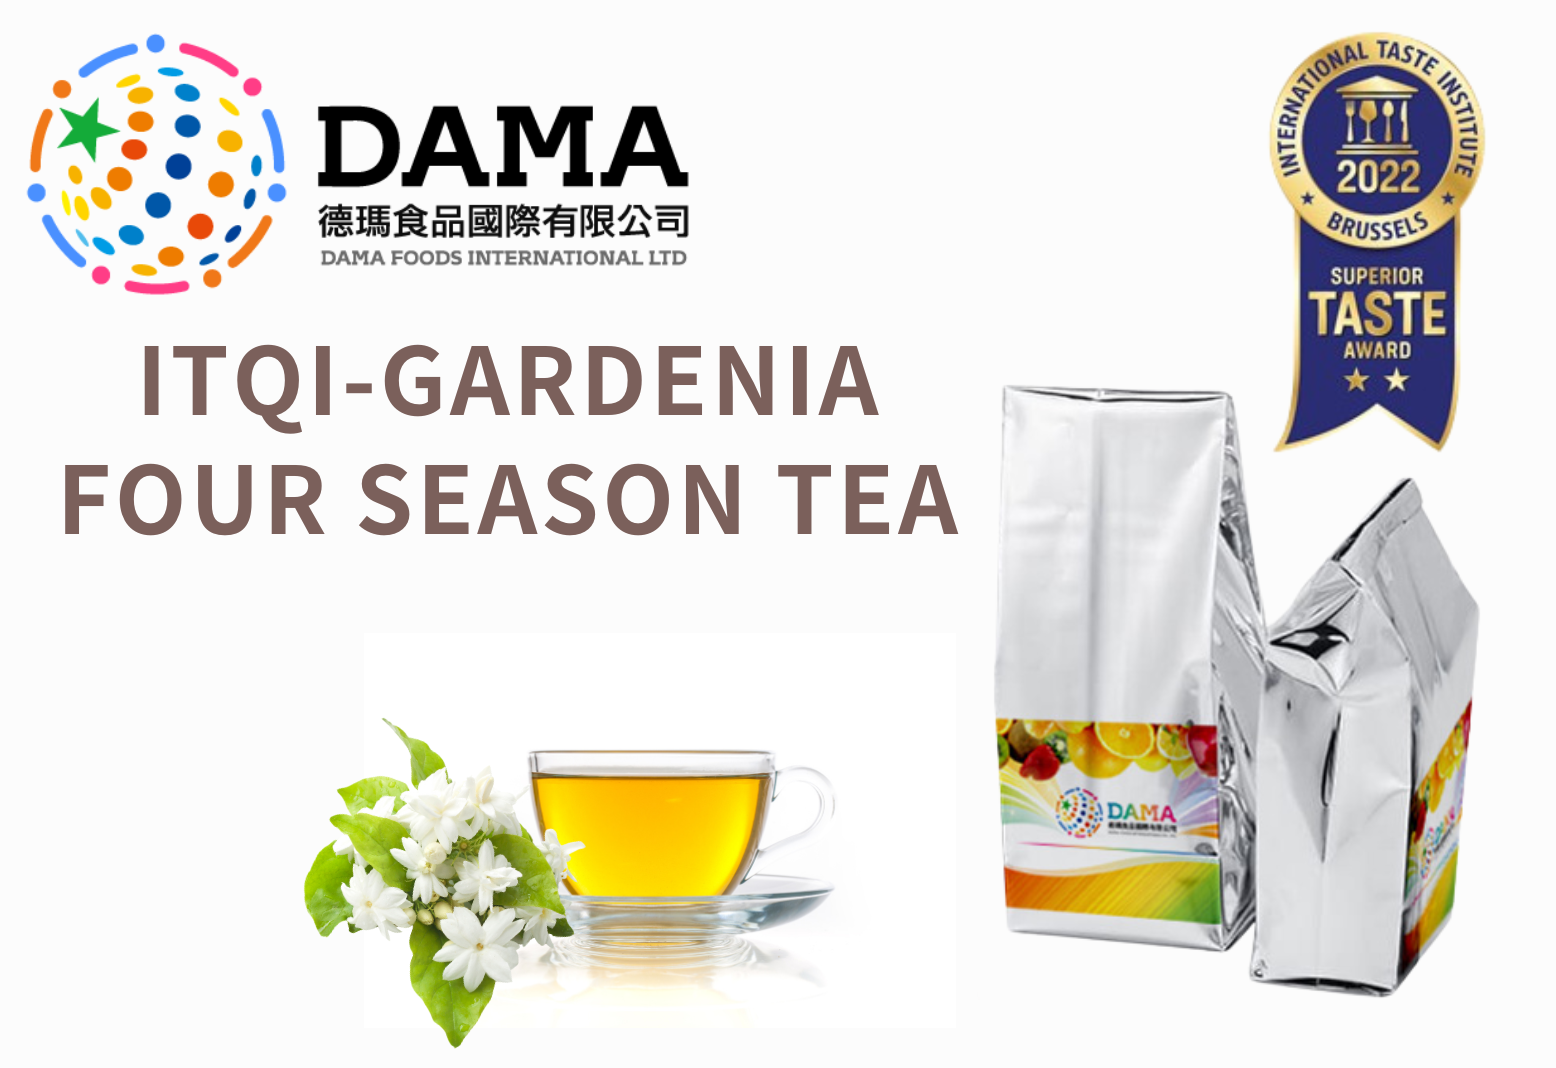 ITQI-Gardenia Four Season Tea